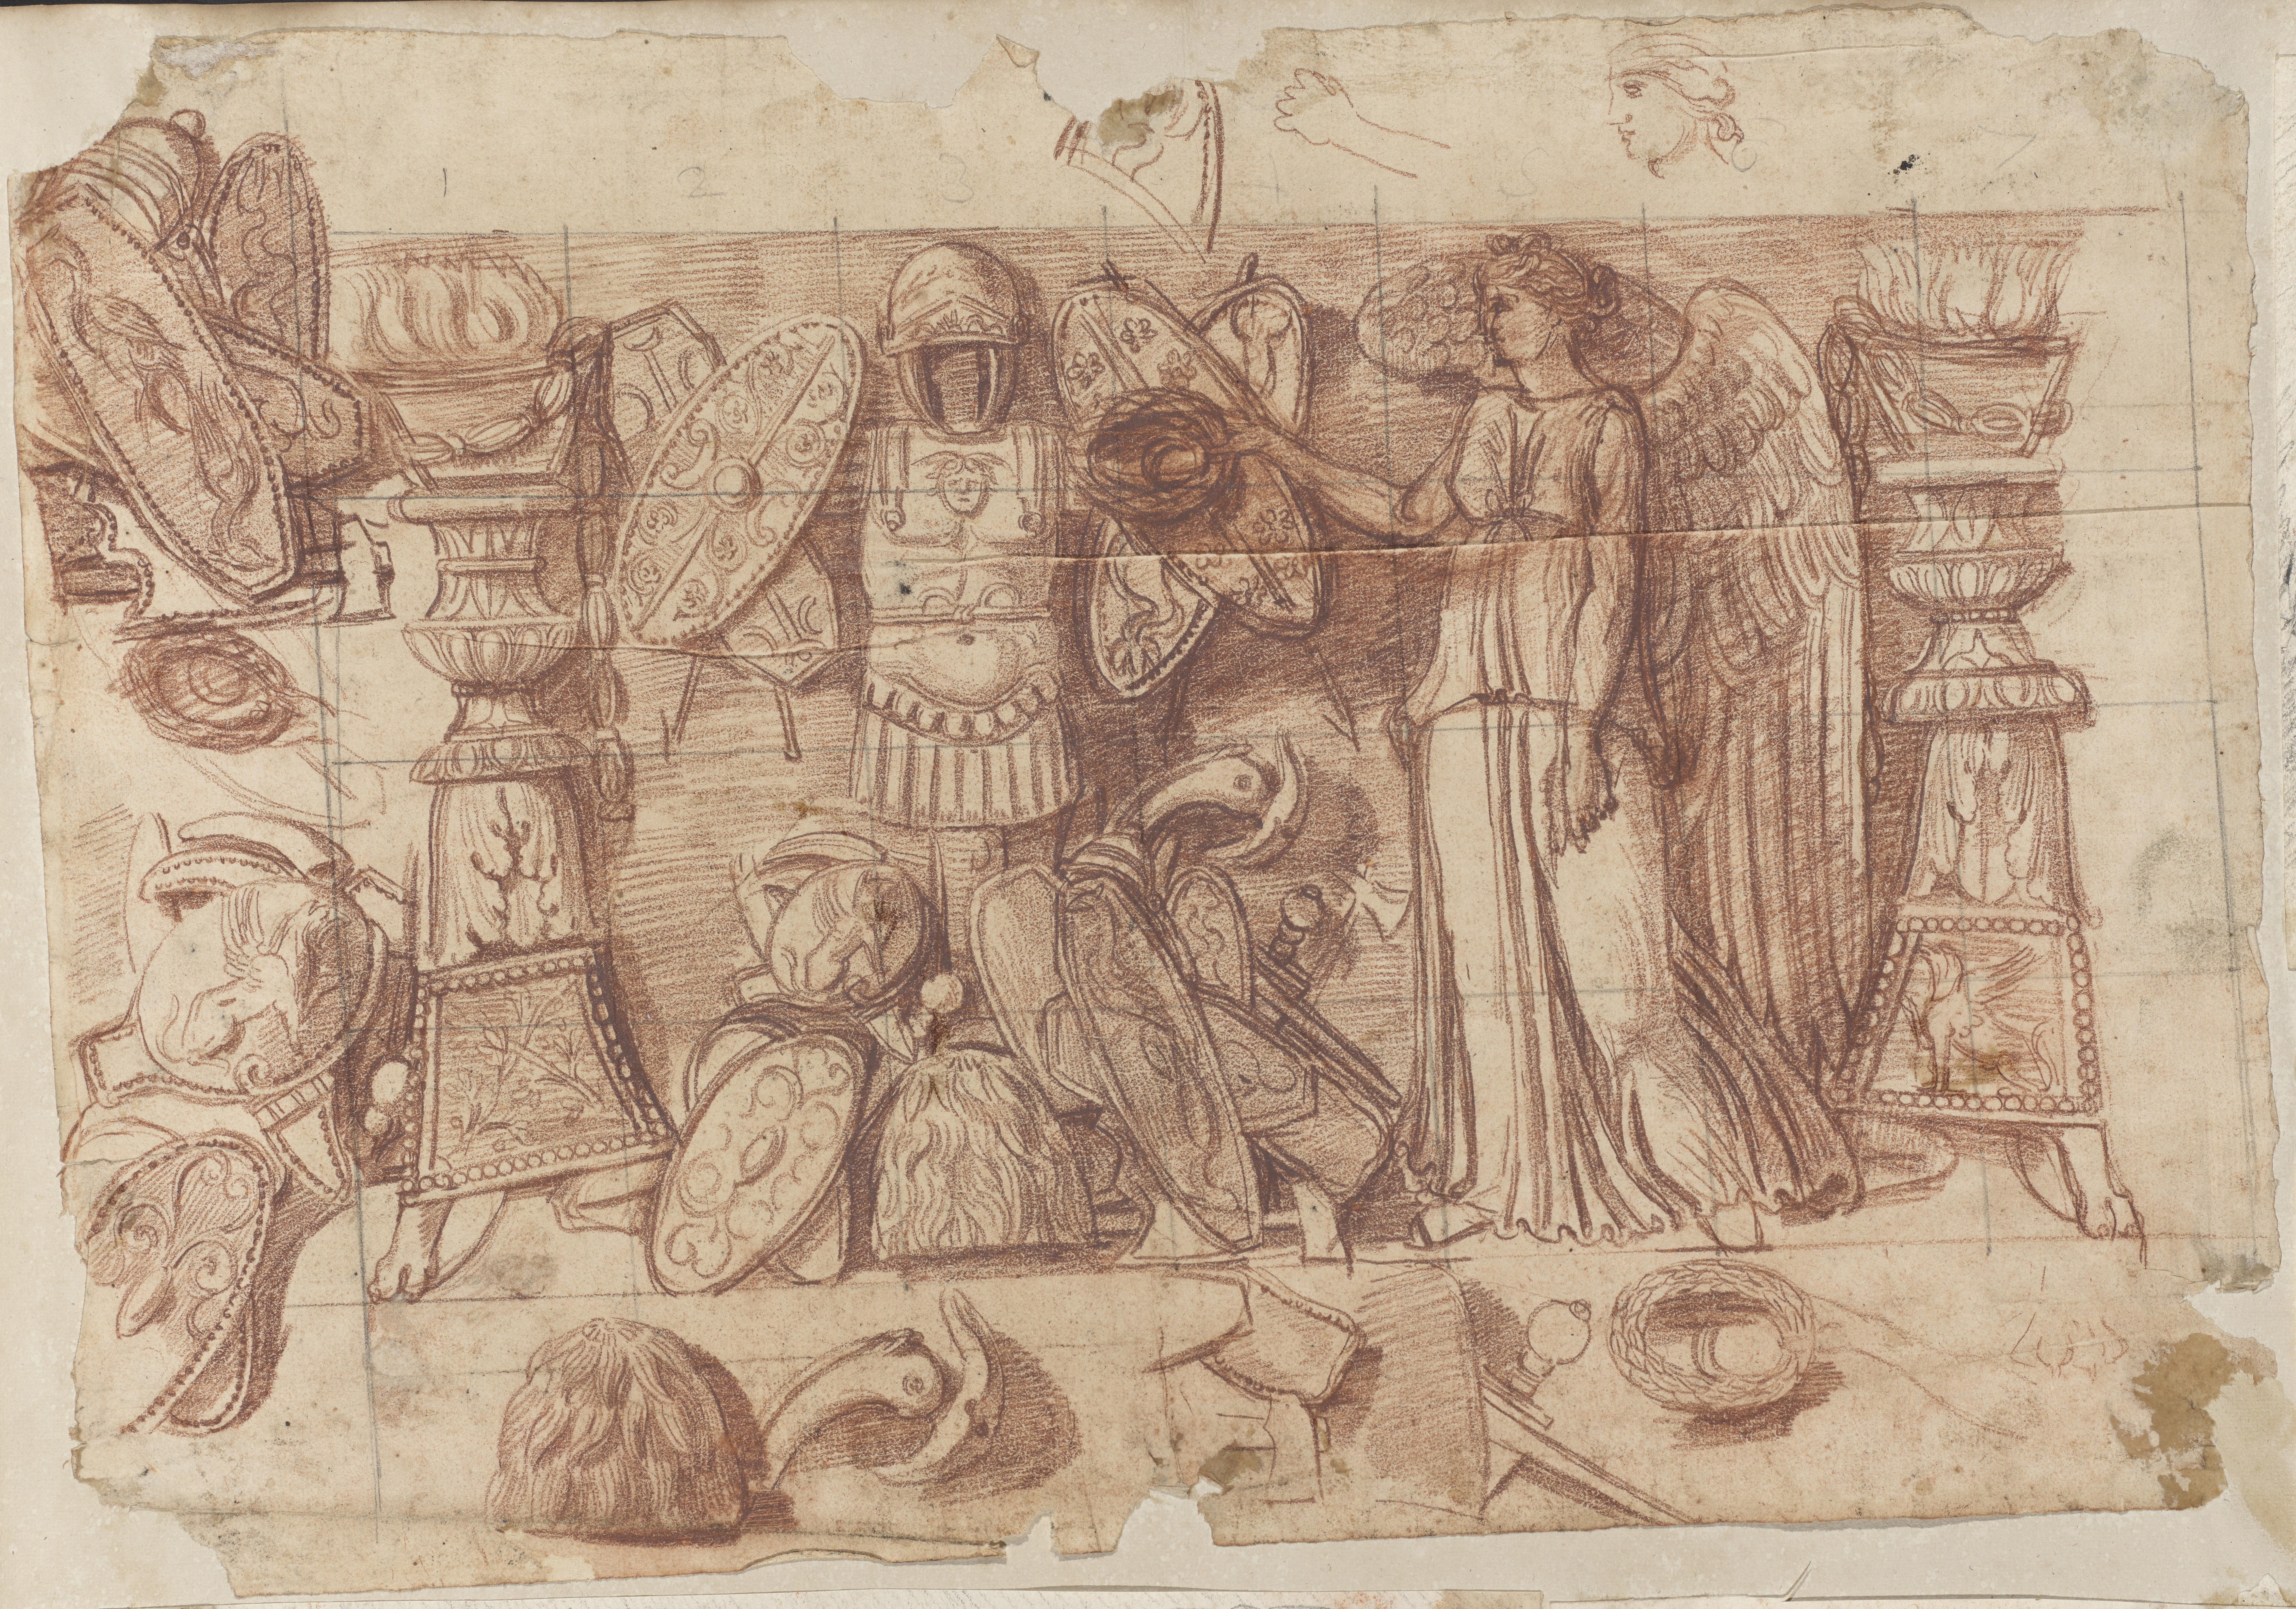 Zeichnung des Viktoria-Trophäen-Reliefs, Abschnitt C mit Rötelkreide und schwarzer Kreide oder schwarzem Stift. Dargestellt ist die Allegorie des Sieges mit Kriegsattributen